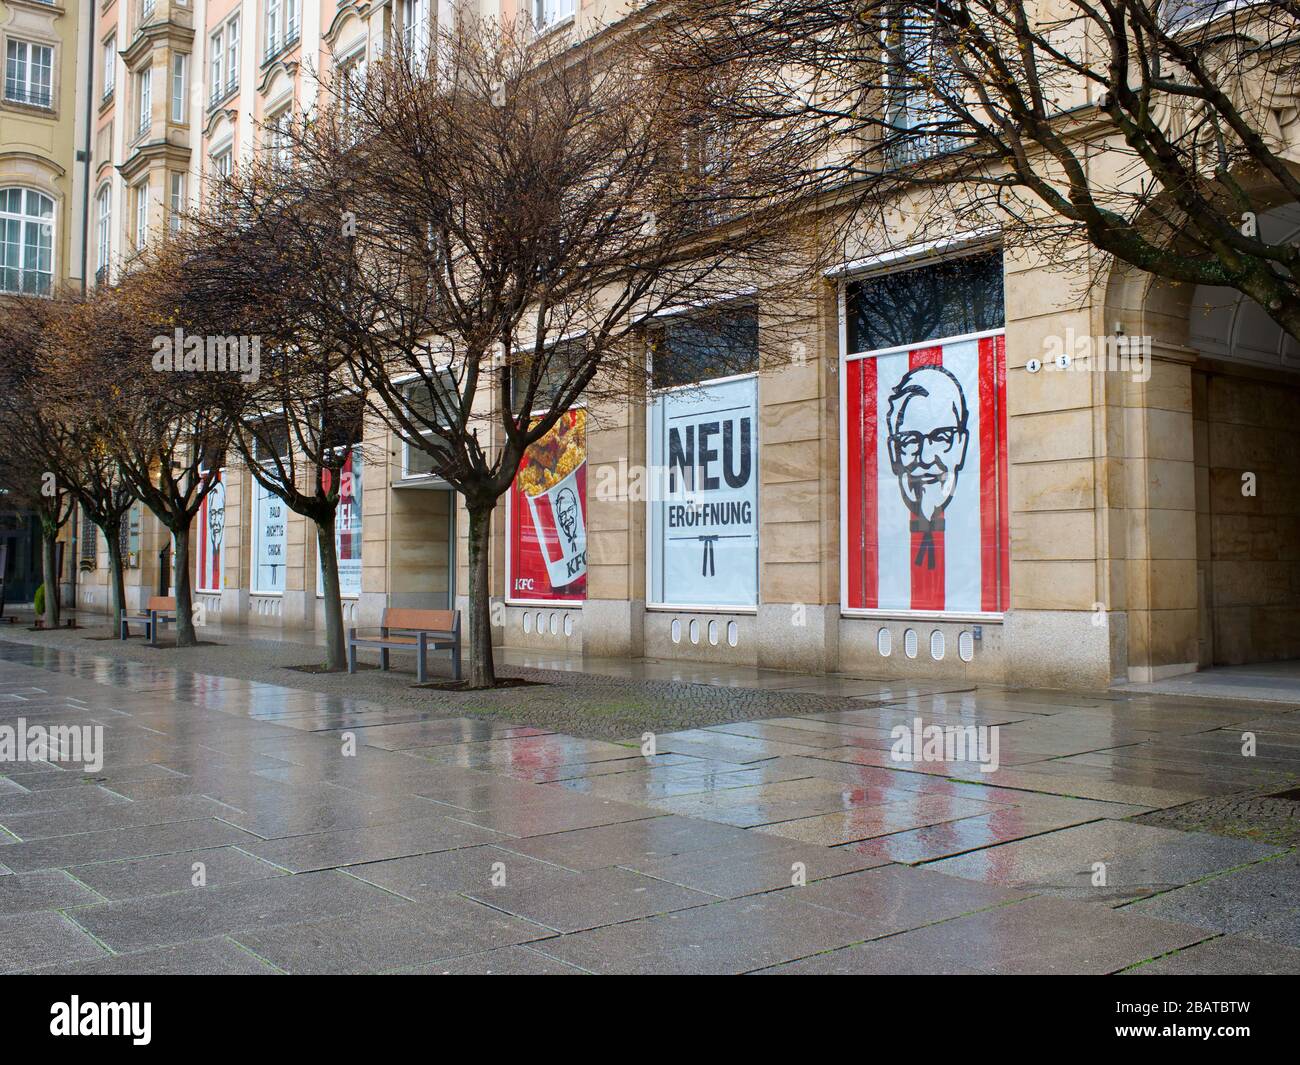 Eröffnung des KFC Restaurants in Dresden am Altmarkt Stock Photo